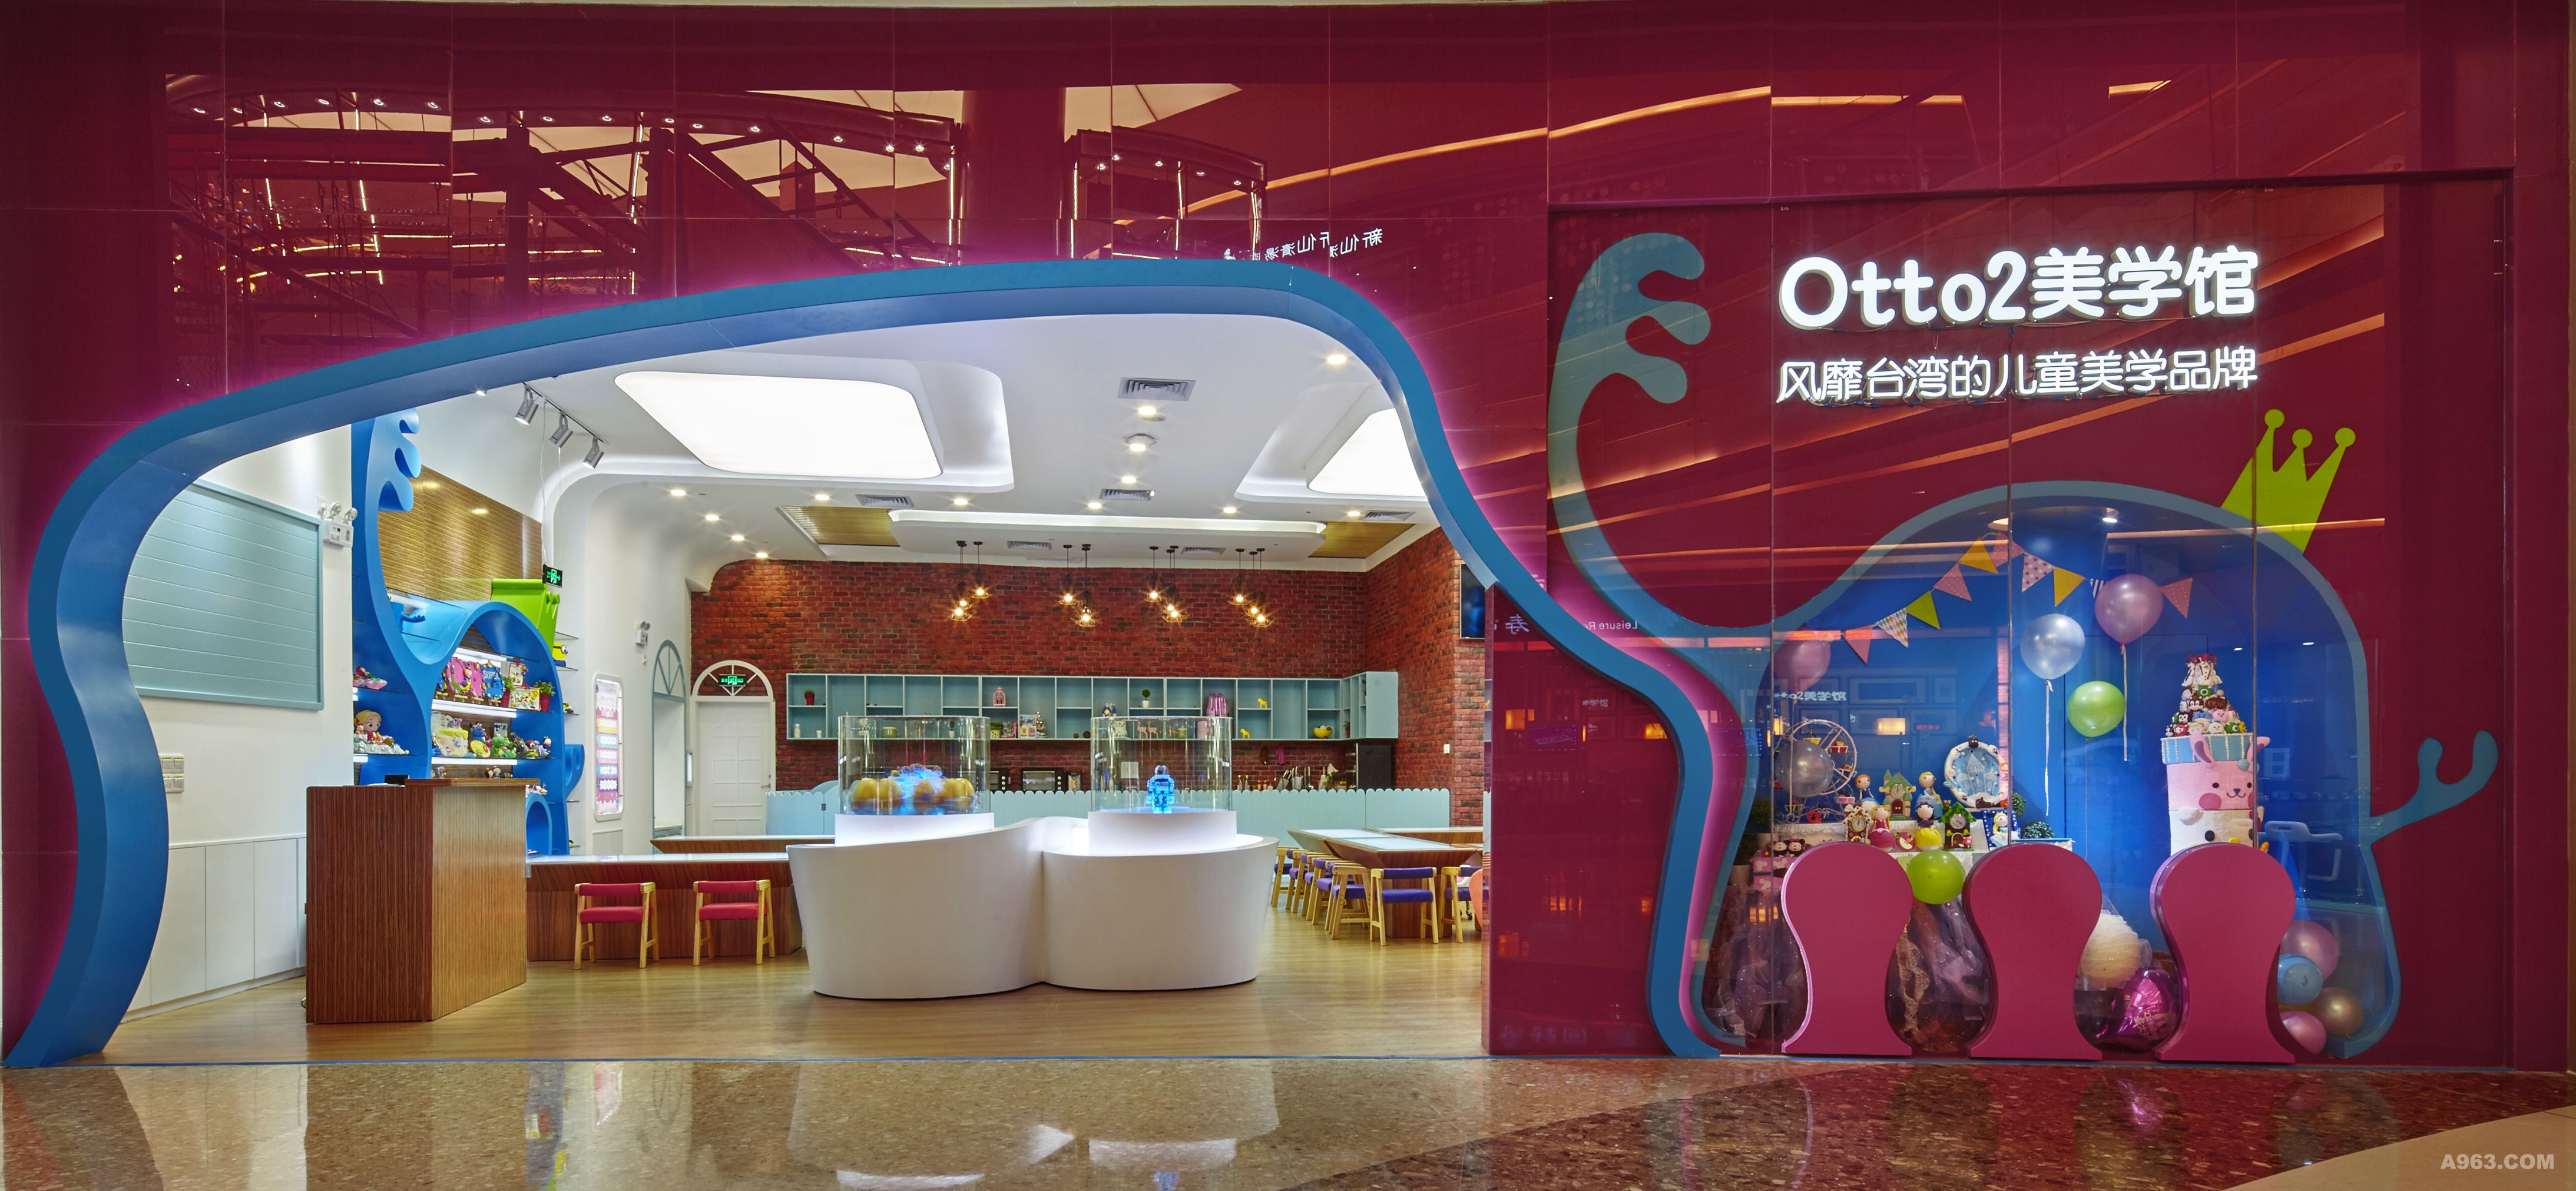 otto2艺术美学上海总部图片